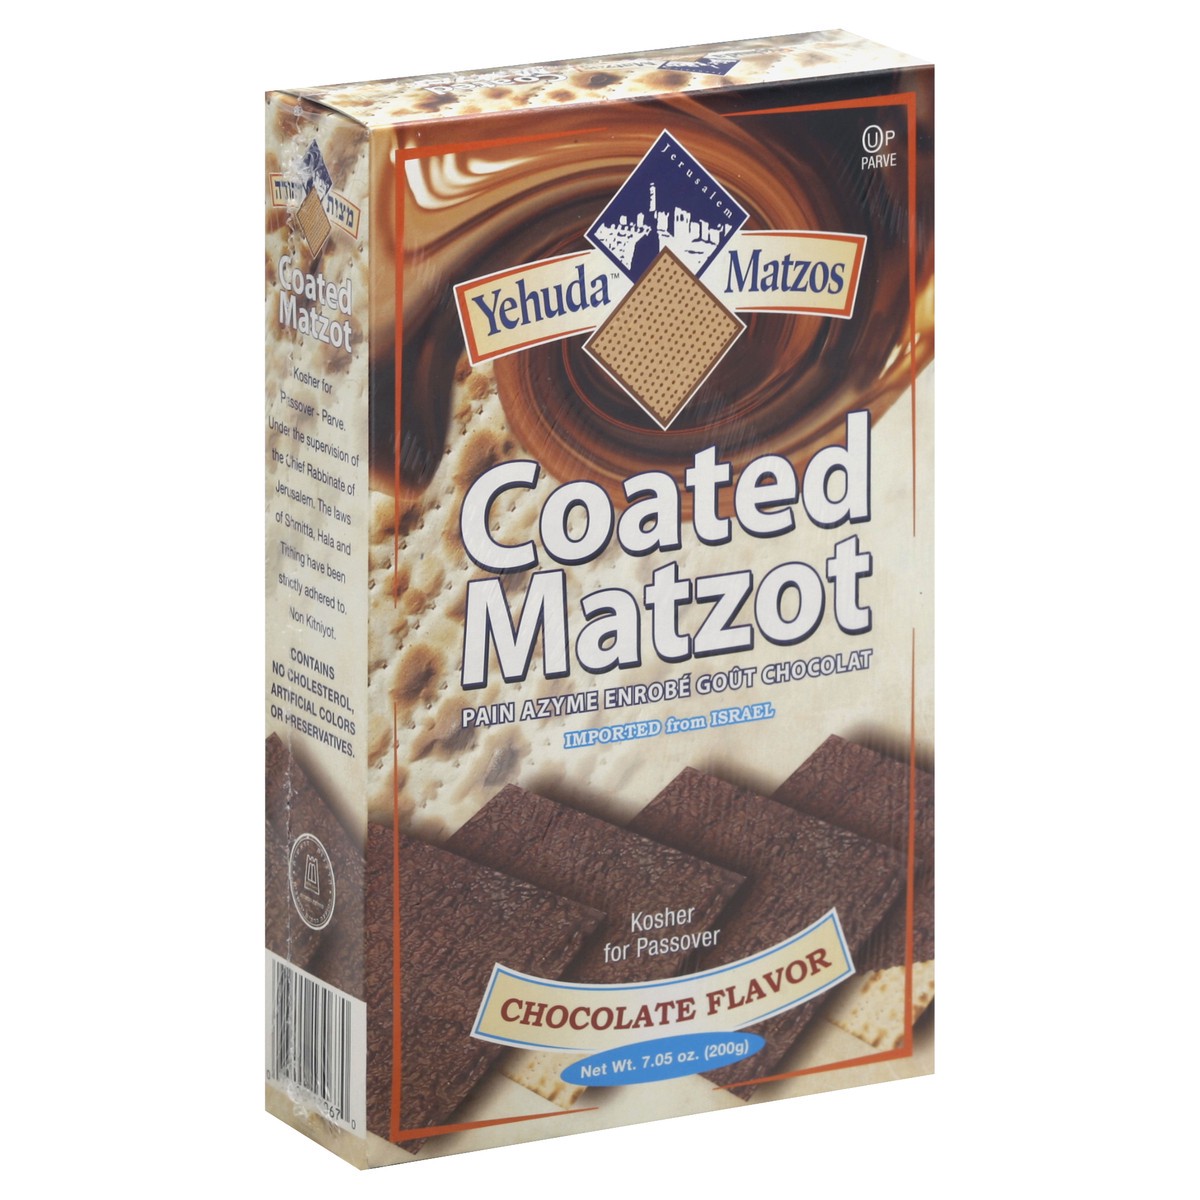 slide 2 of 5, Yehuda Chocolate Covered Matzo - Kosher For Passover, 7.05 oz